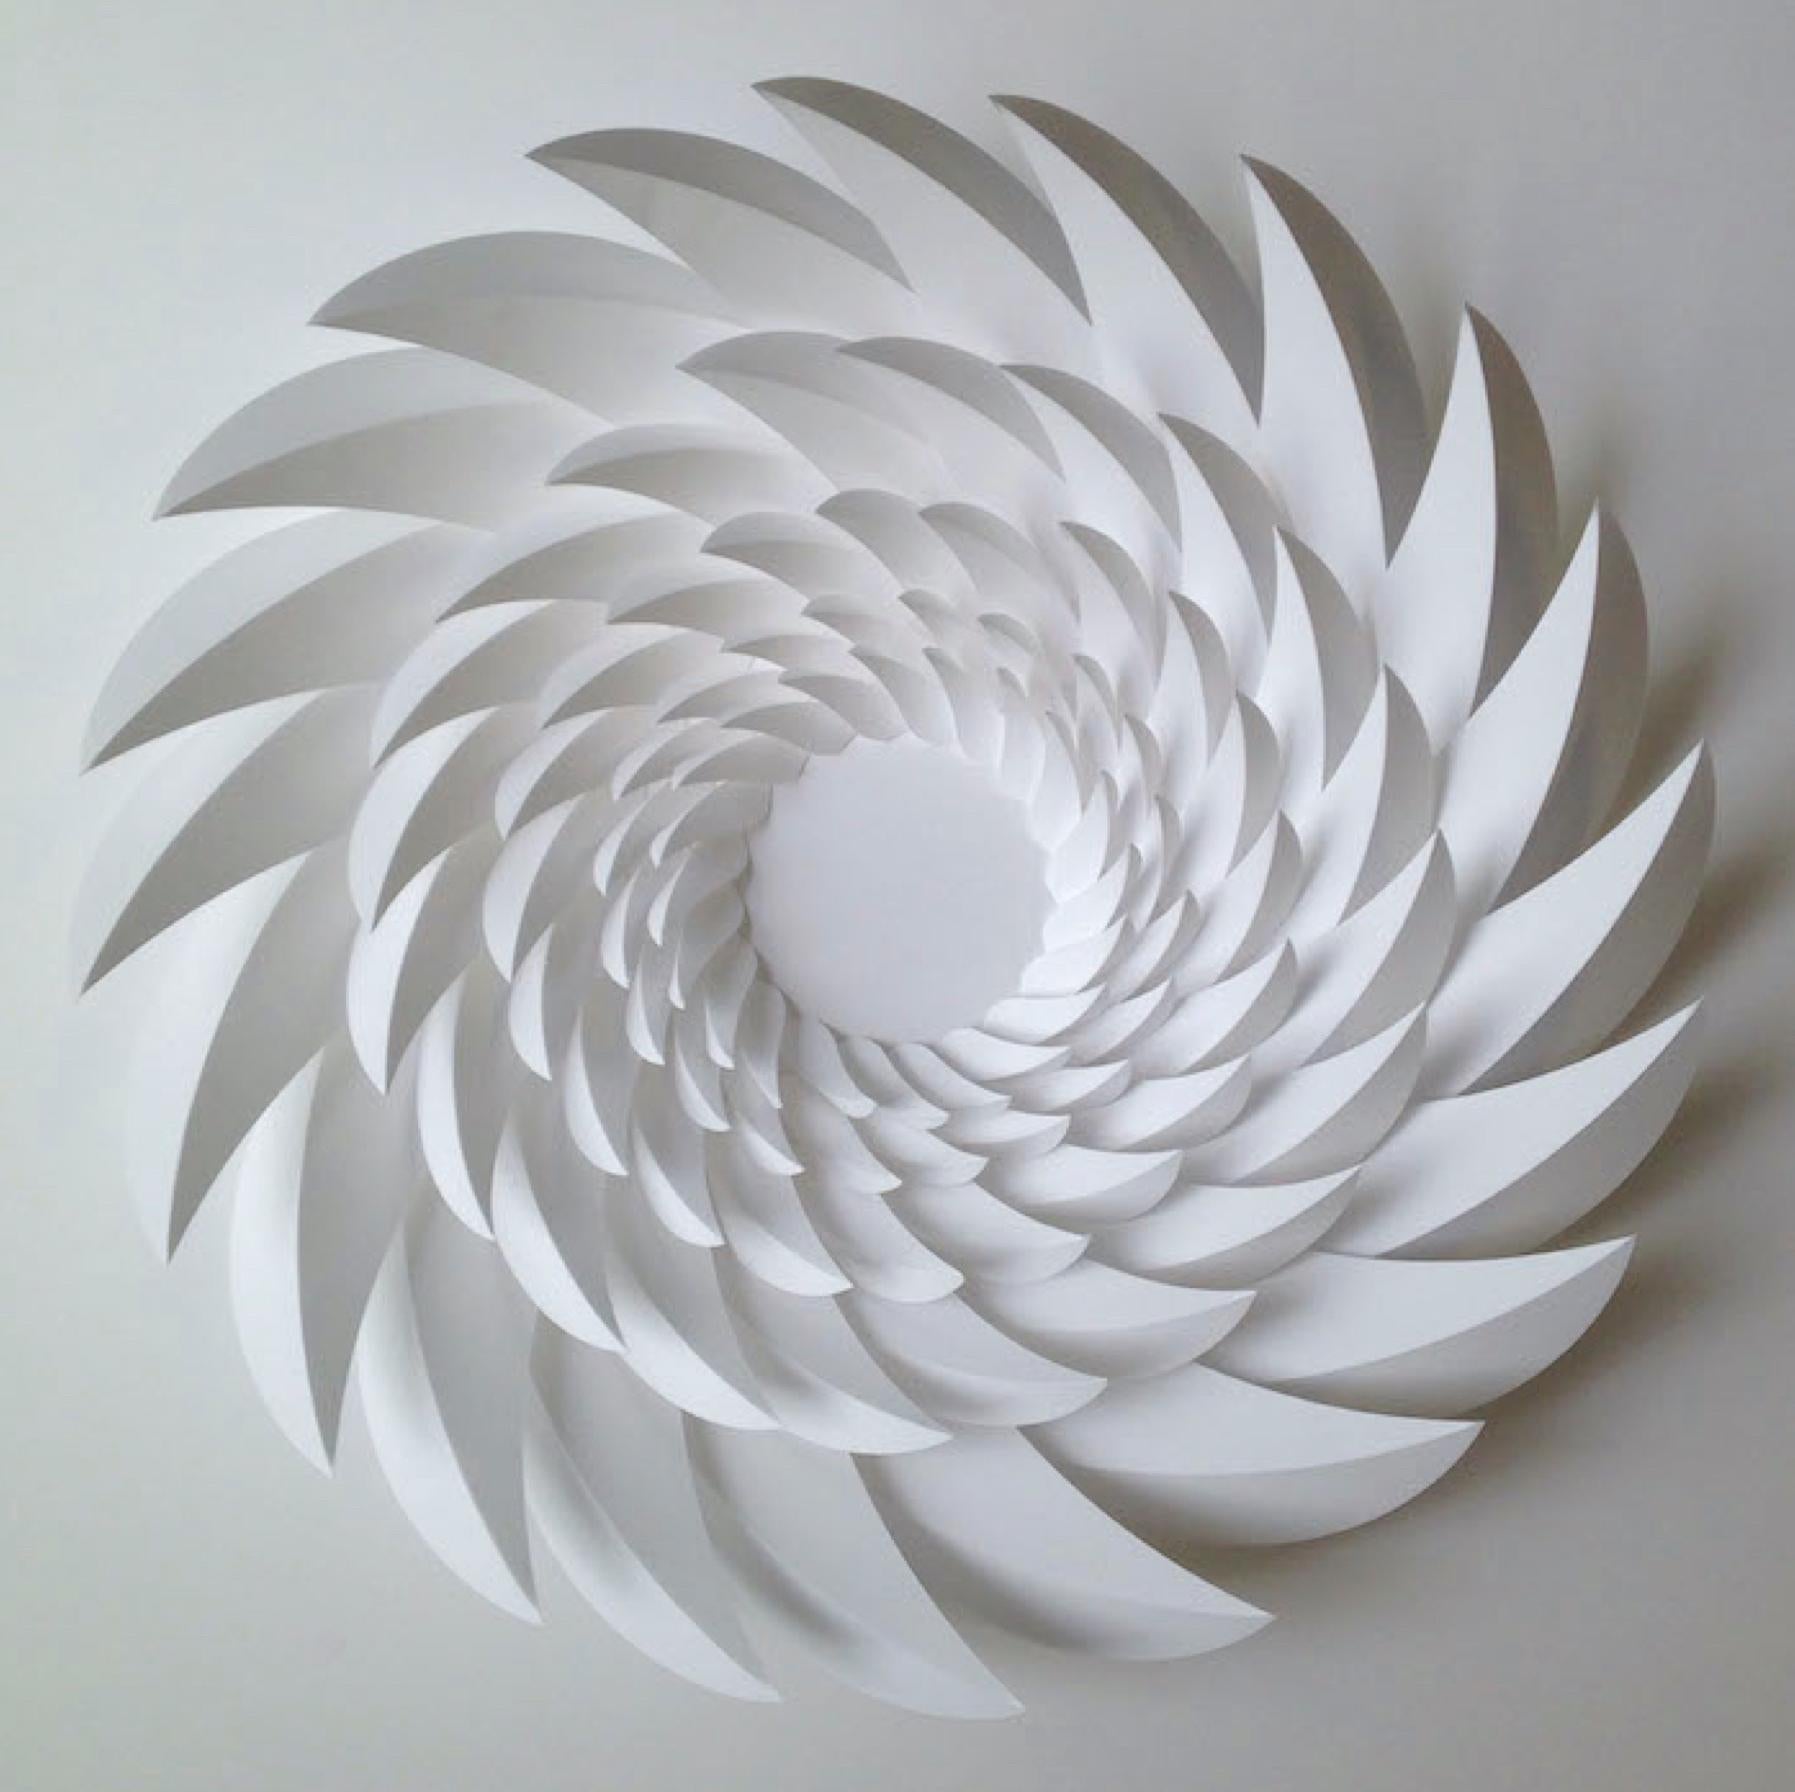 Retina 22 - Sculpture by Matt Shlian